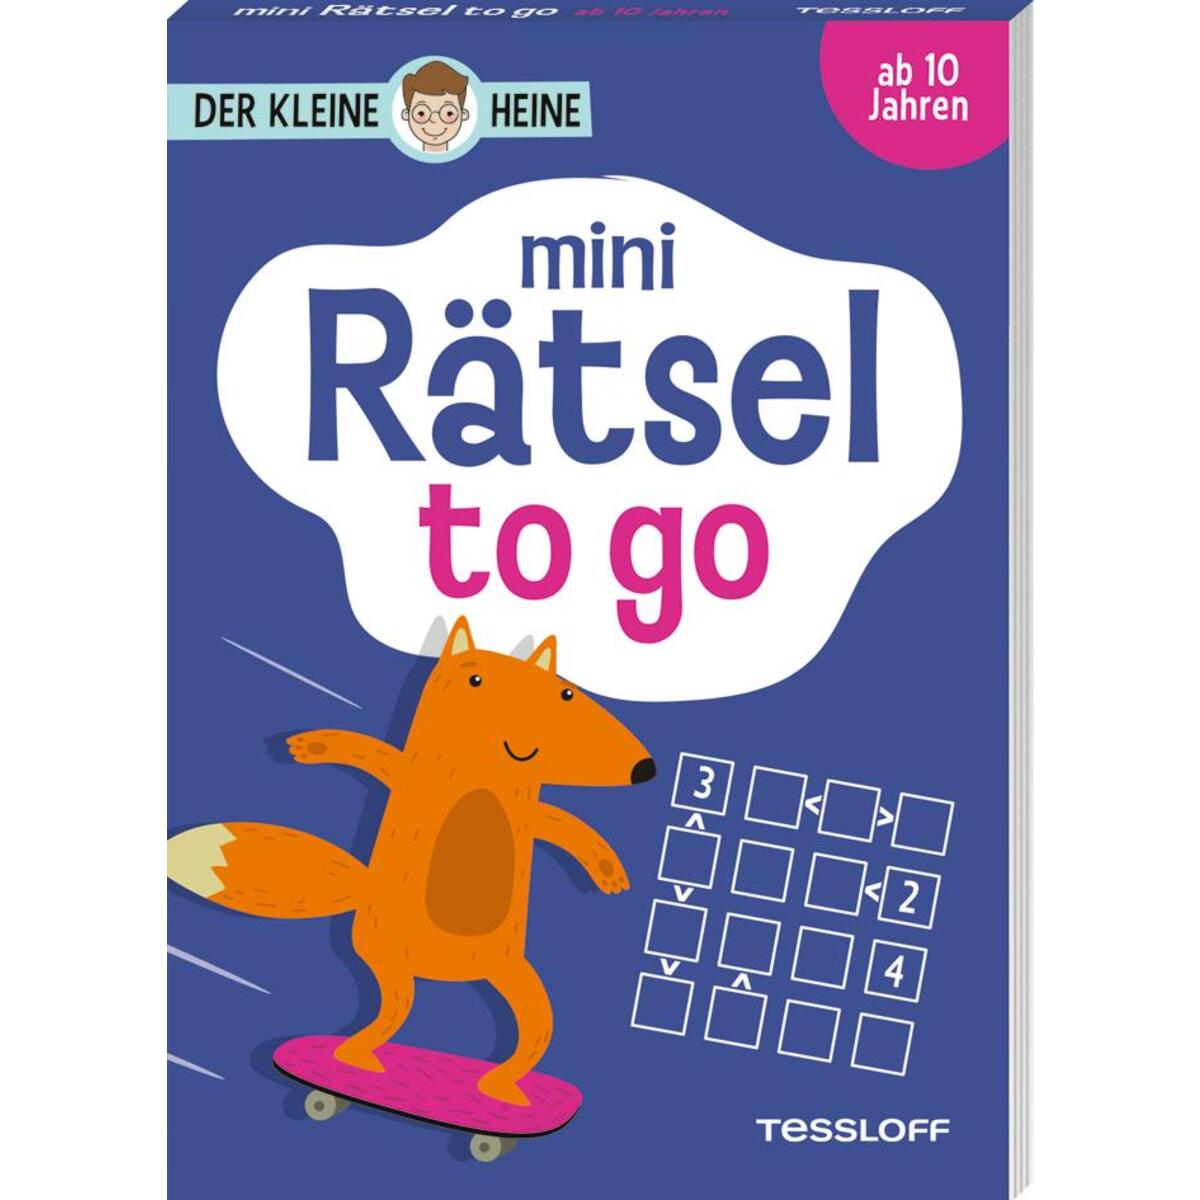 Der kleine Heine. Mini Rätsel to go. Ab 10 Jahren von Tessloff Verlag